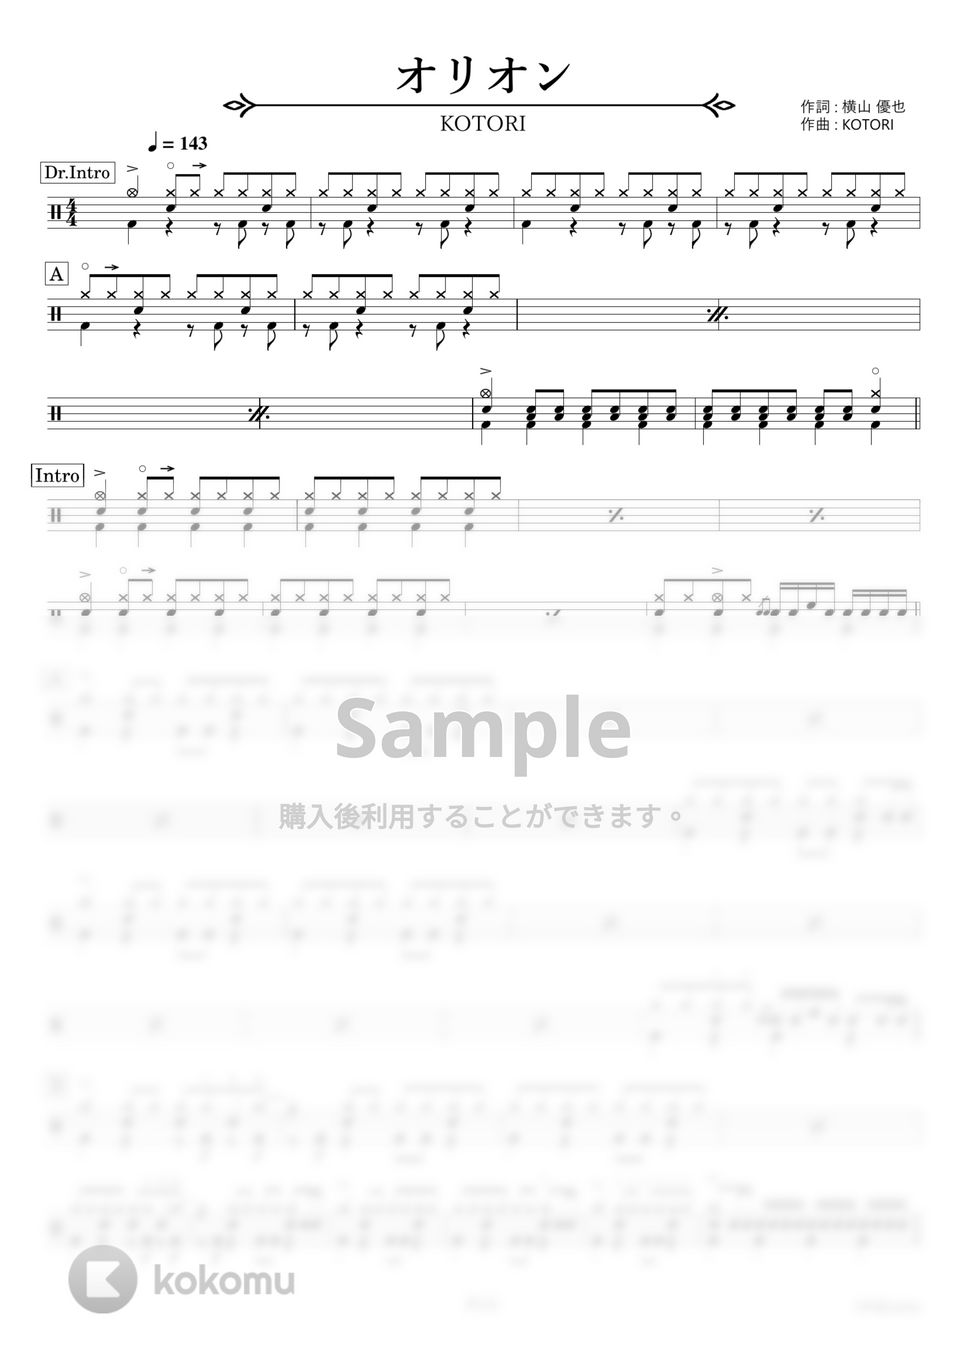 KOTORI - オリオン【ドラム楽譜・完コピ】 by HYdrums